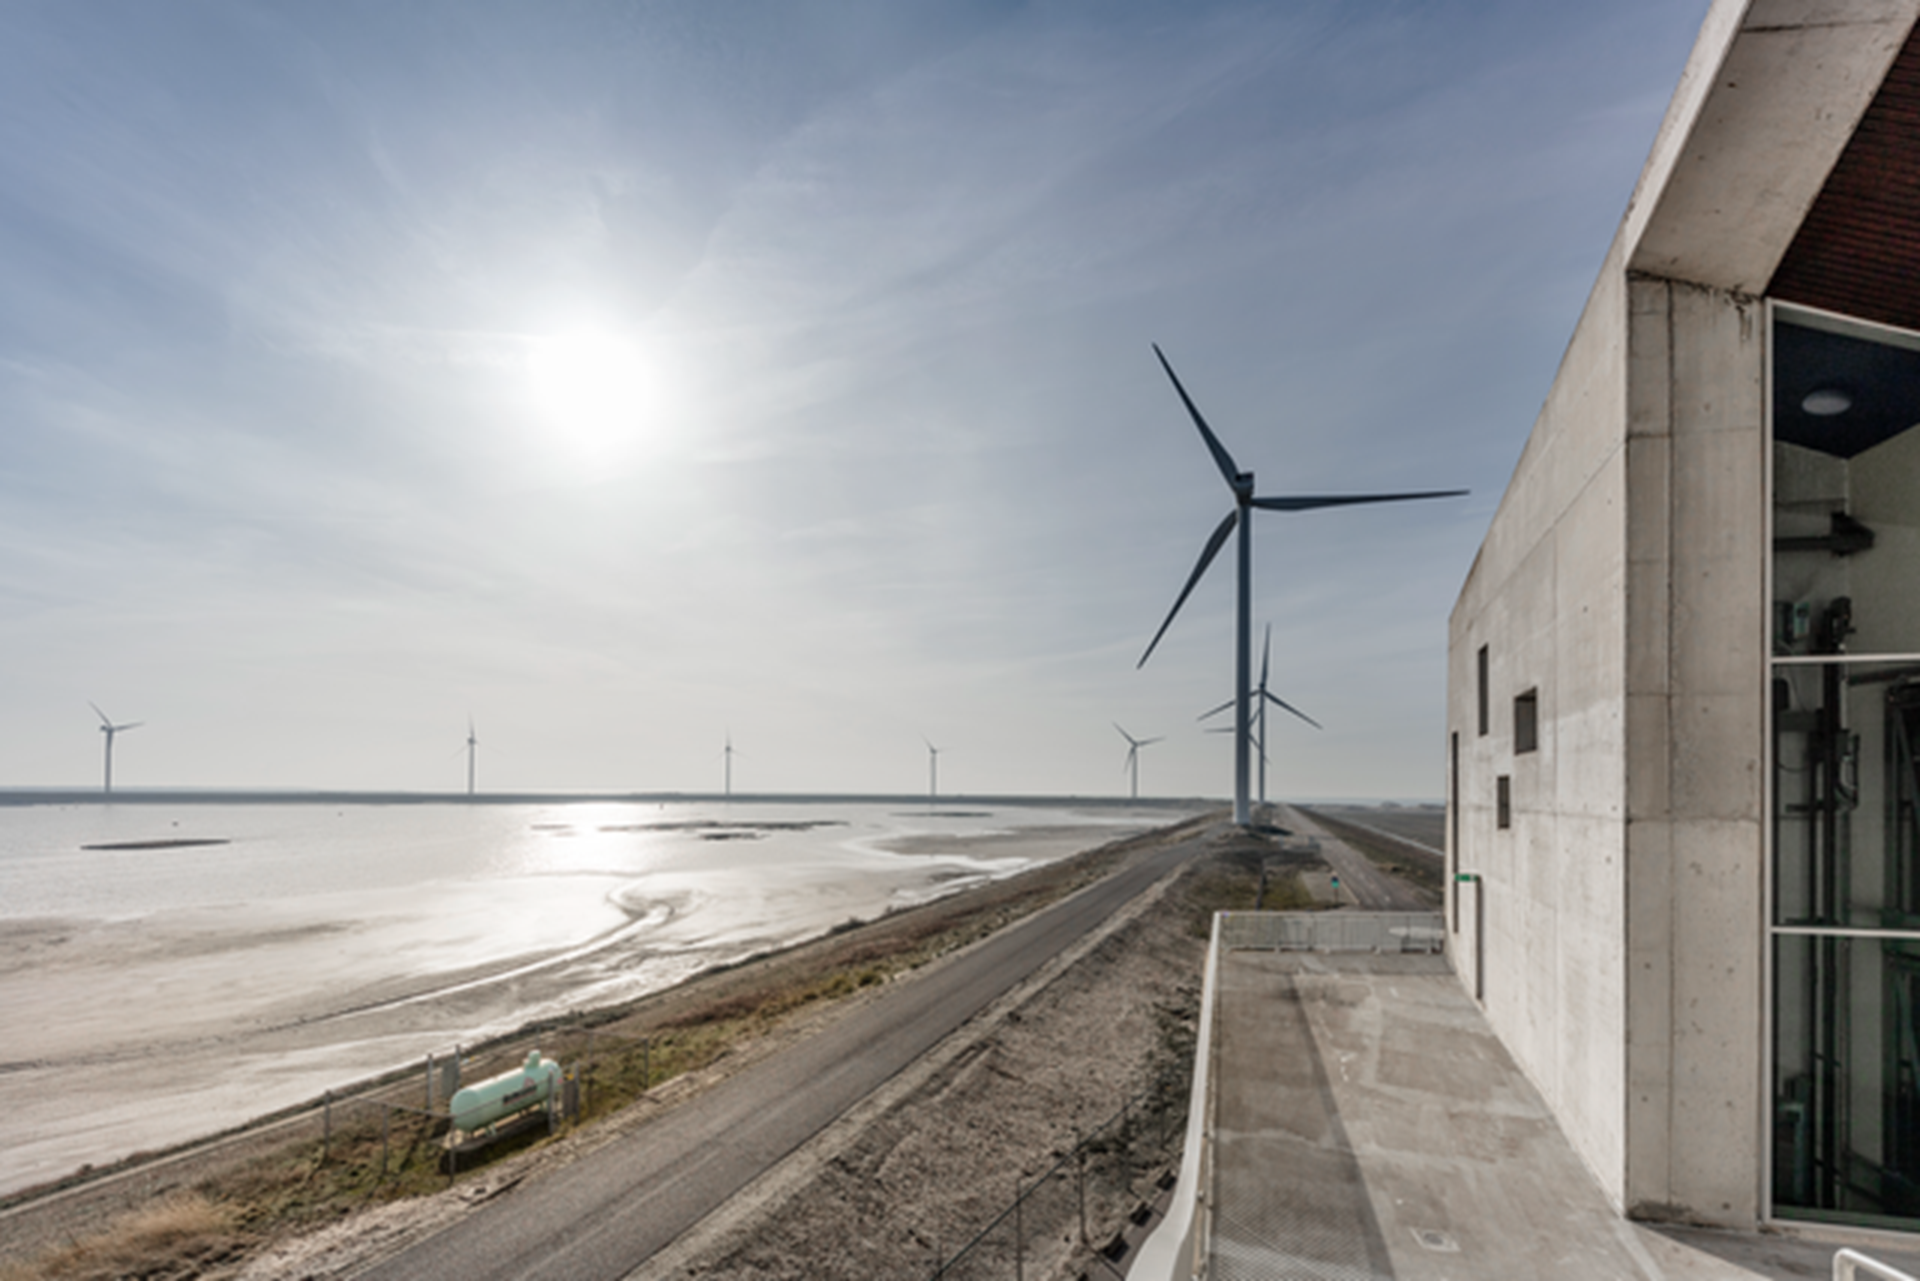 Slufterdam met windmolens - E-boiler: wind en zon inzetten voor warmte